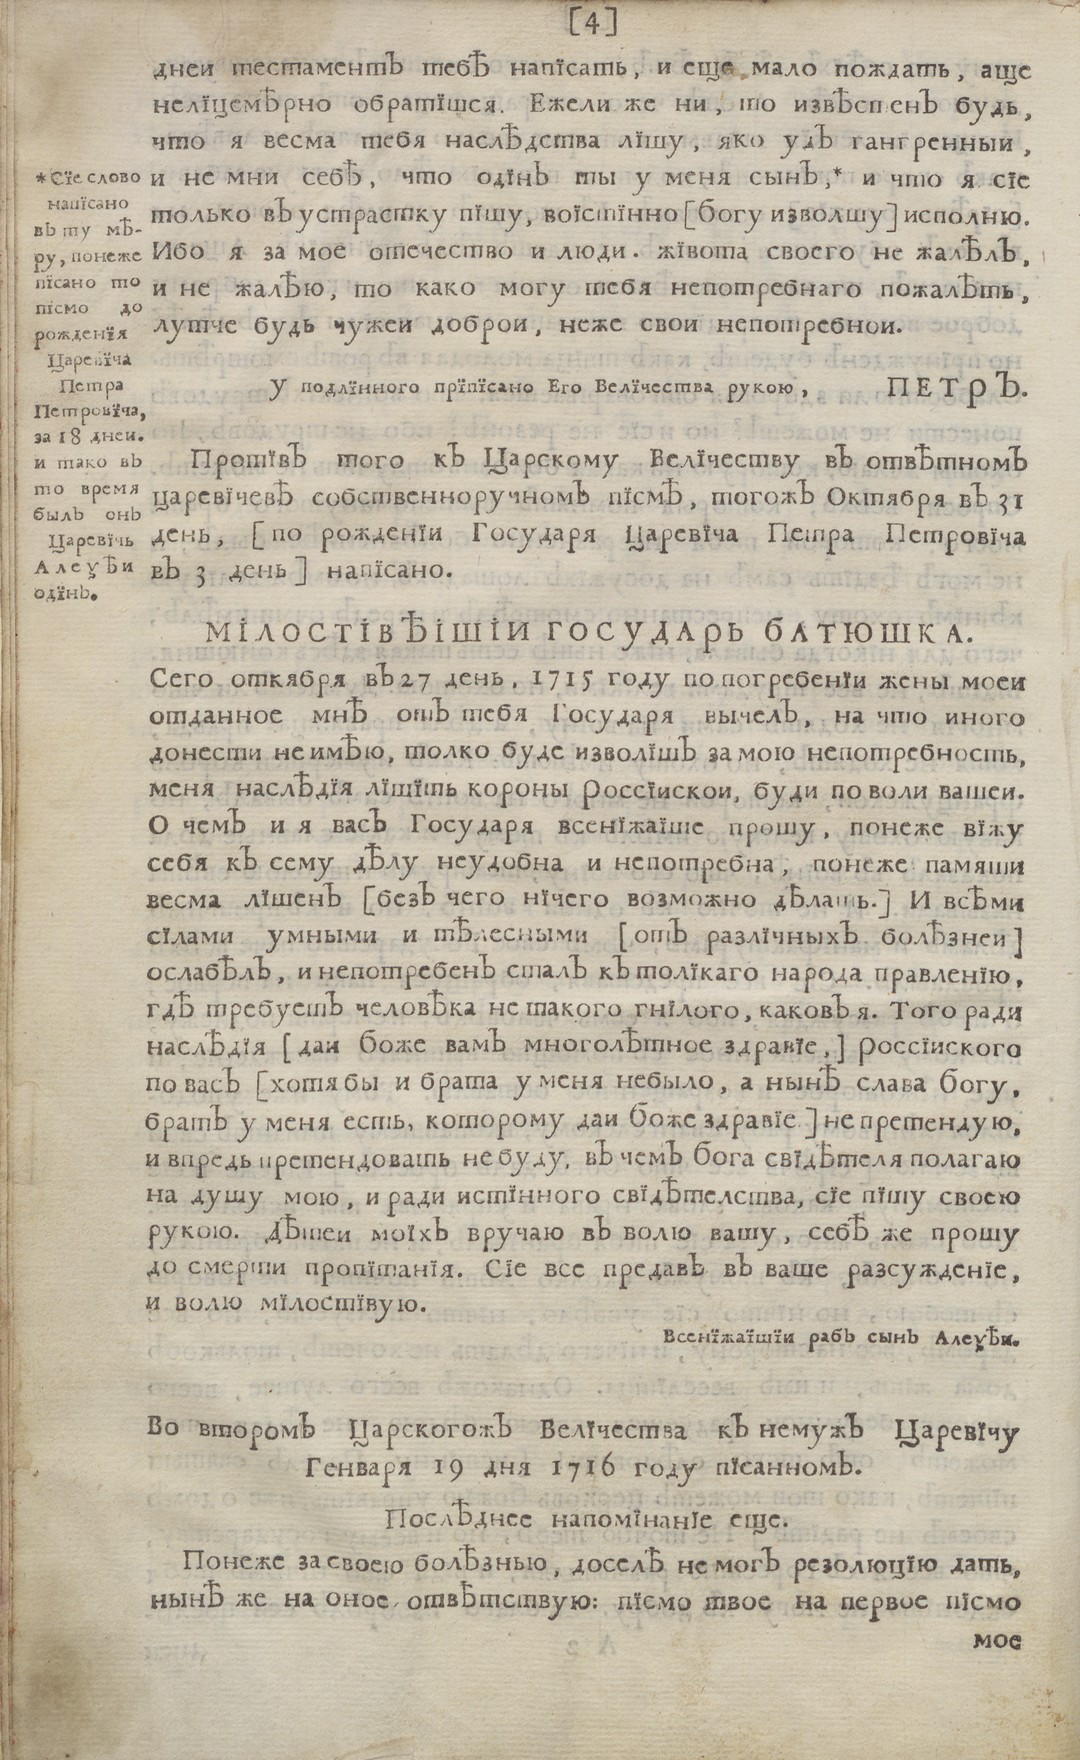 Доклад по теме Алексей Петрович (1690-1718)